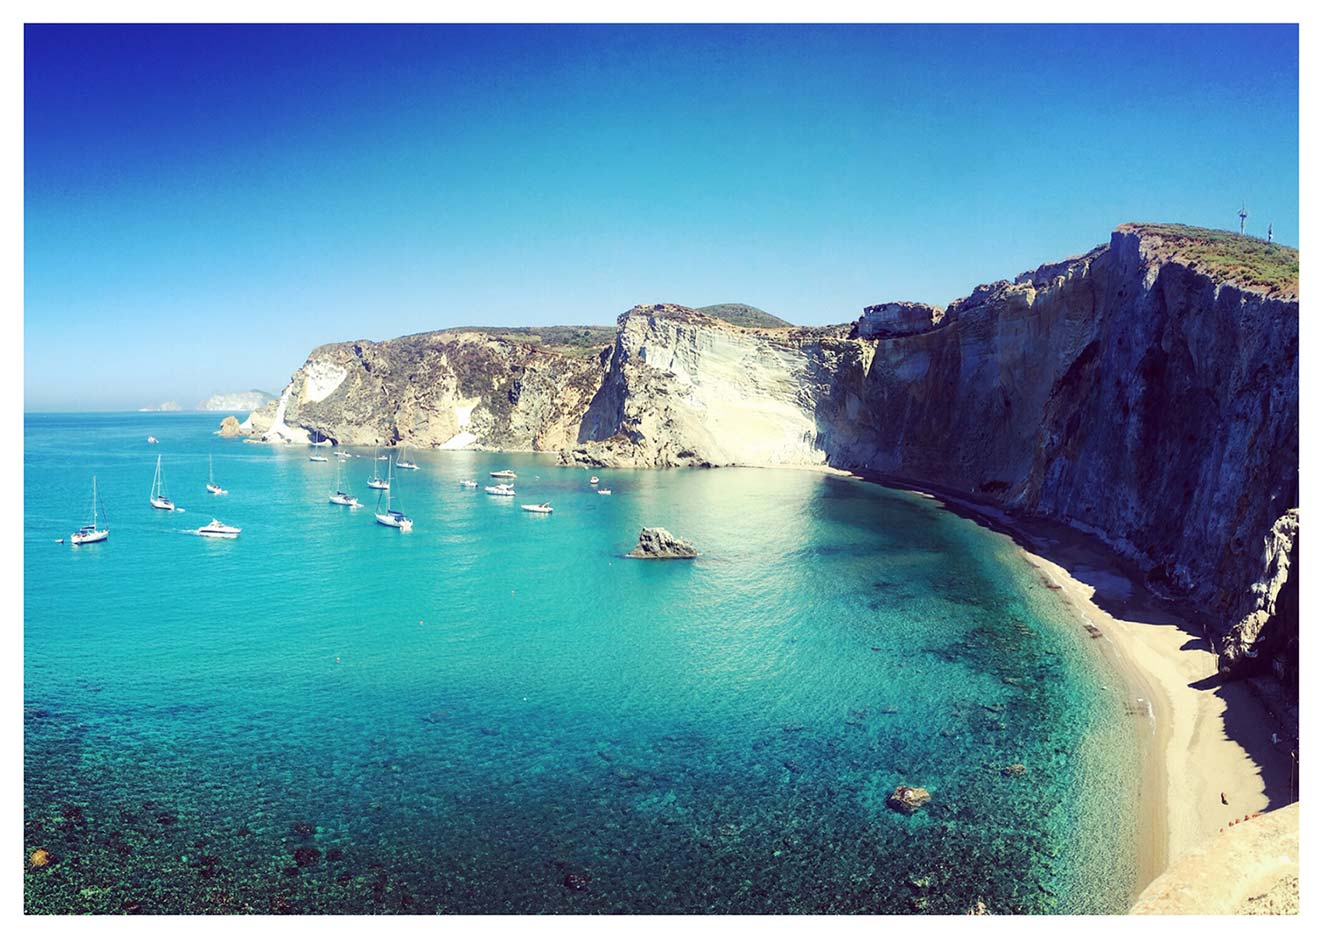 Tre giorni sull'Isola di Ponza: cosa vedere - La geografia del mio cammino